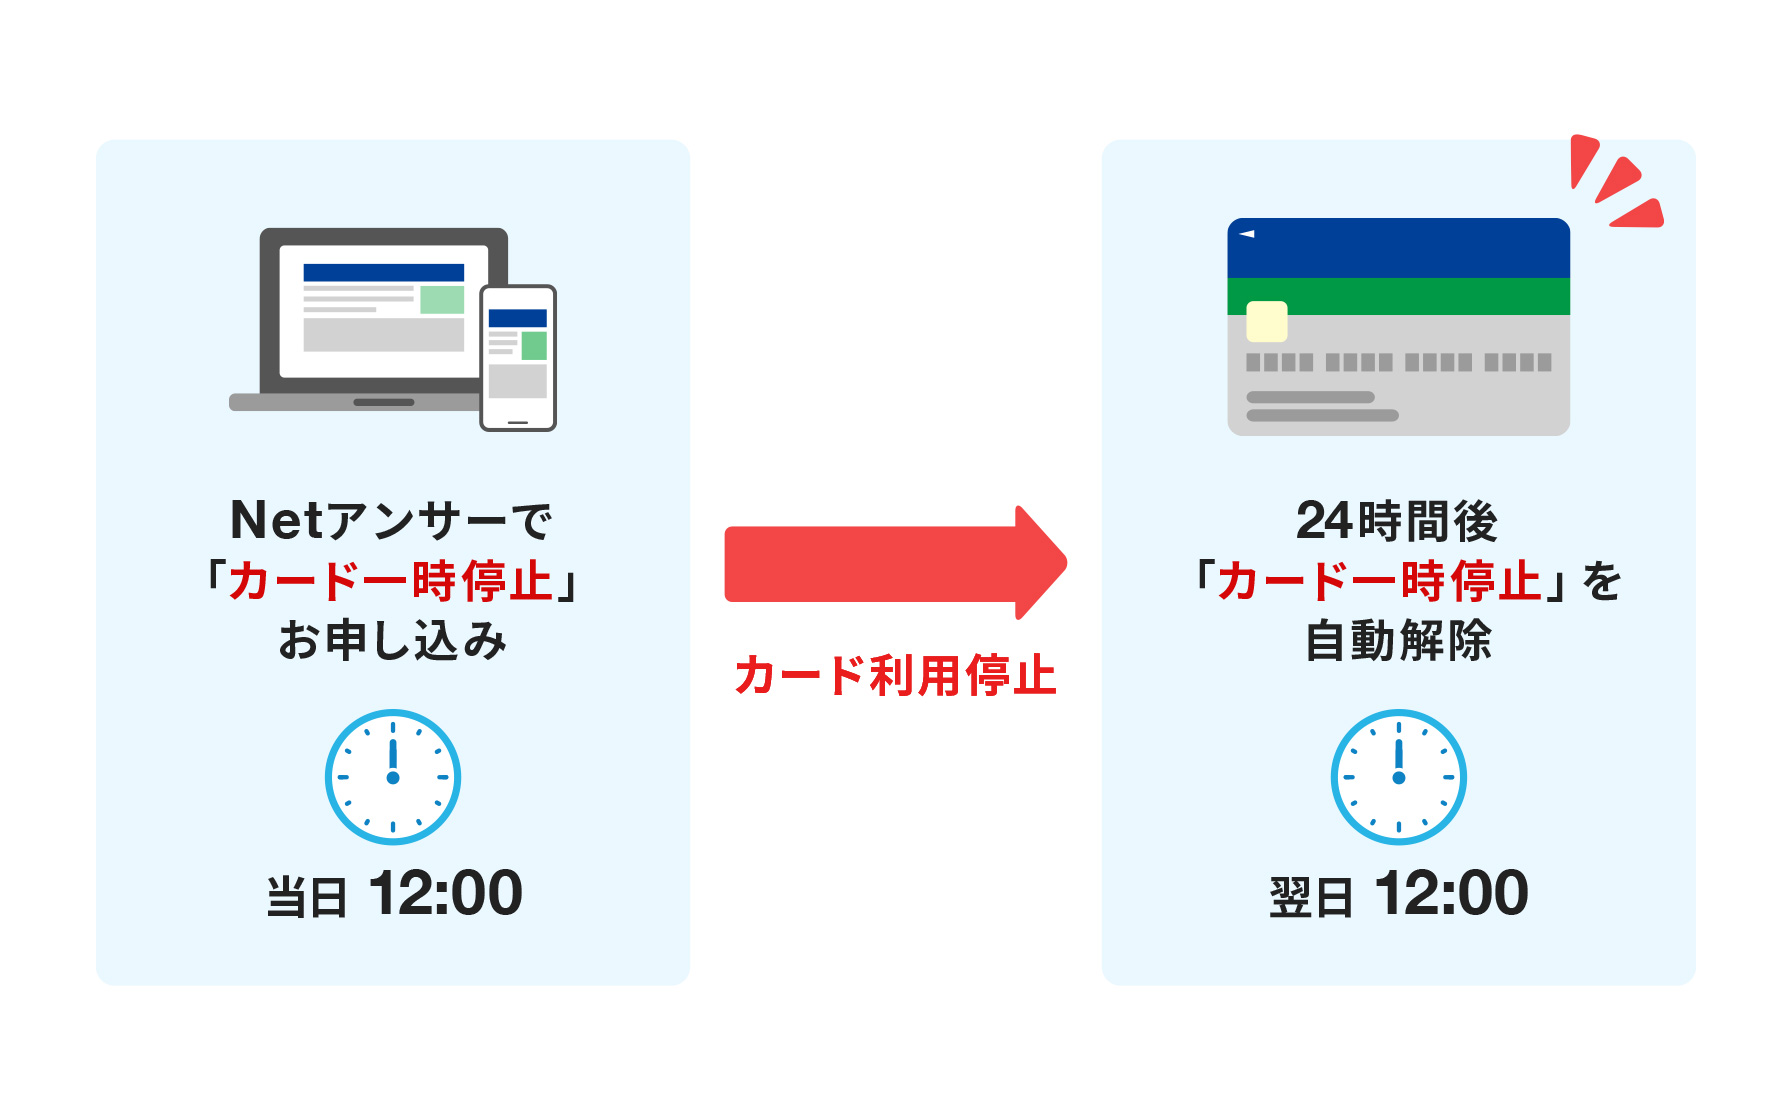 Netアンサーで「カード一時停止」お申し込み（当日12:00）でカード利用停止し、24時間後「カード一時停止」を自動解除（翌日12:00）